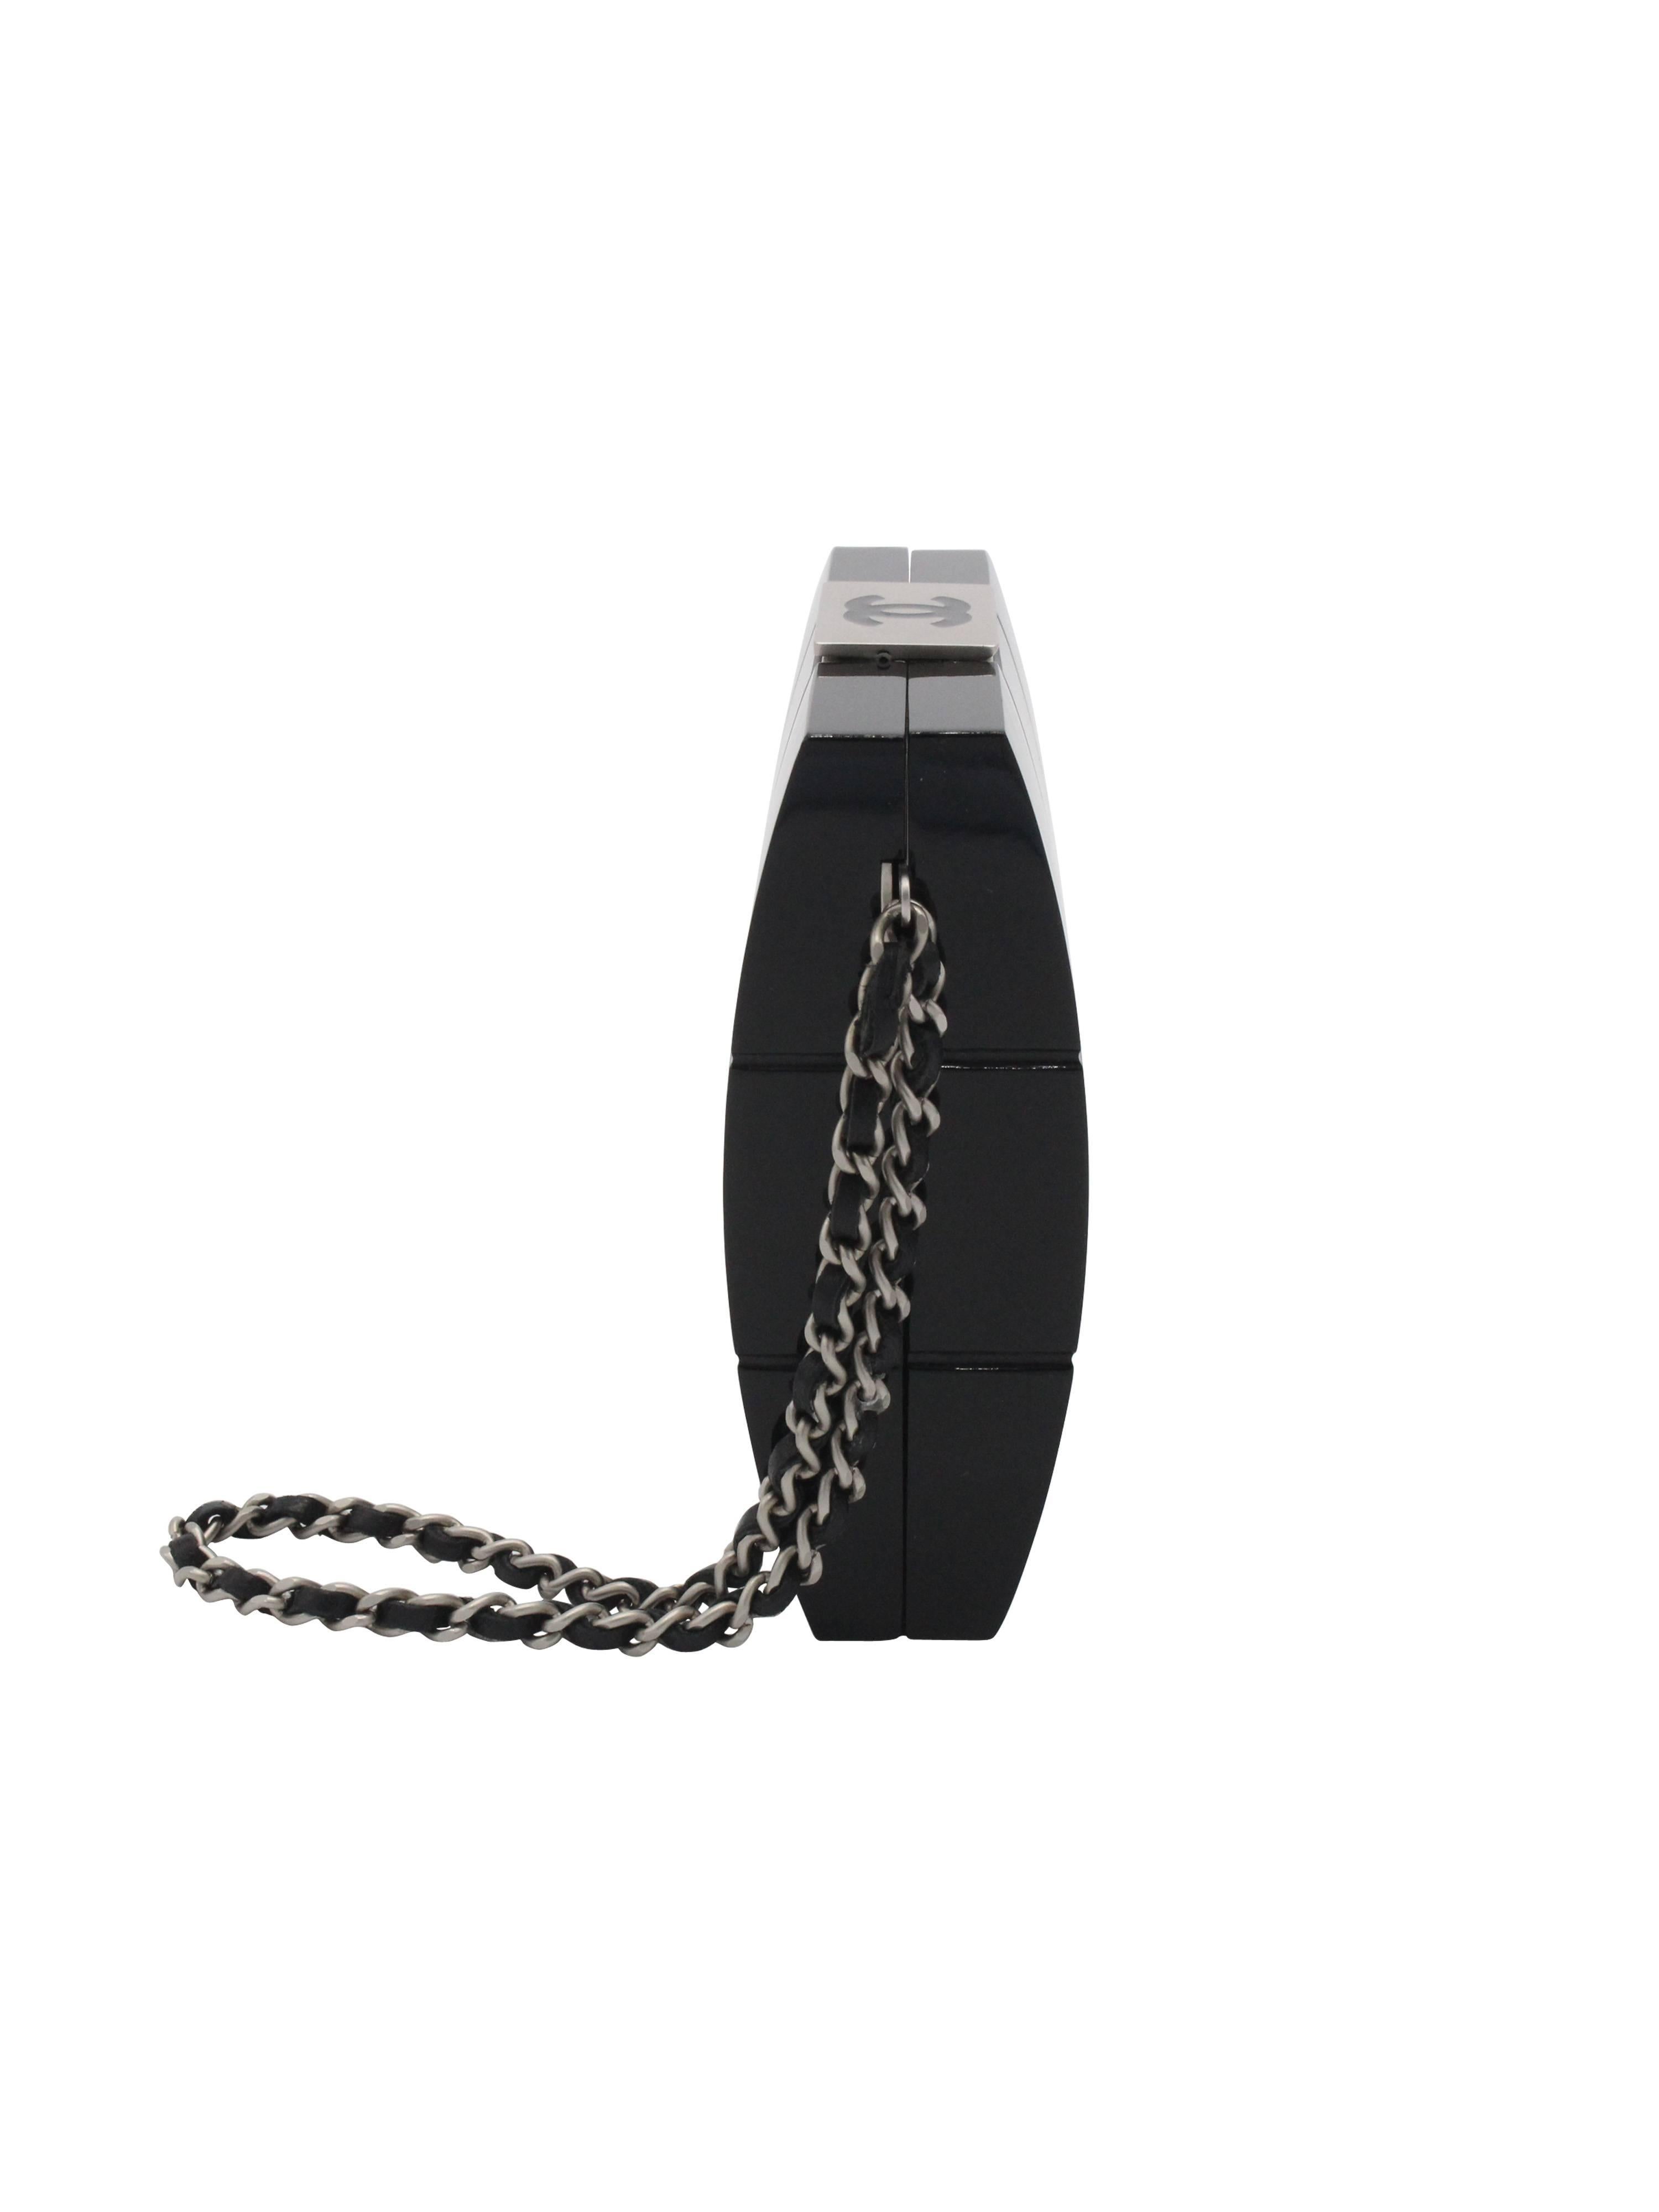 Schwarze Chanel Clutch aus Lucite mit matt silberfarbener Hardware, seitlichem Henkel aus Kette und geflochtenem Leder, ineinandergreifendem CC oben, durchgehendem Steppmotiv, einer einzelnen Innentasche und Druckknopfverschluss oben. Die